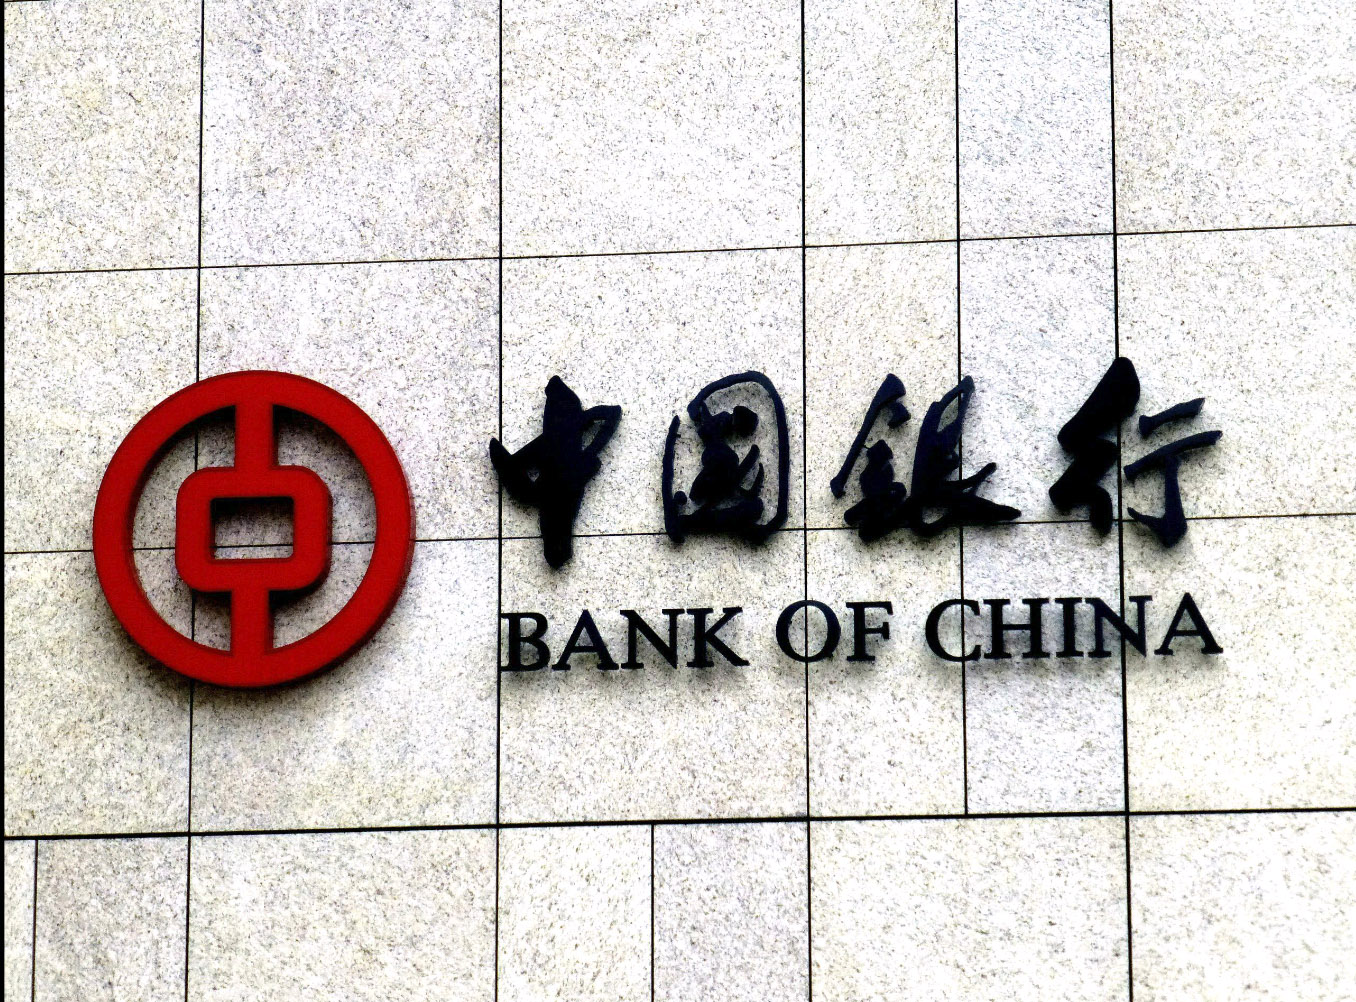 Avalan que opere Bank of China en México